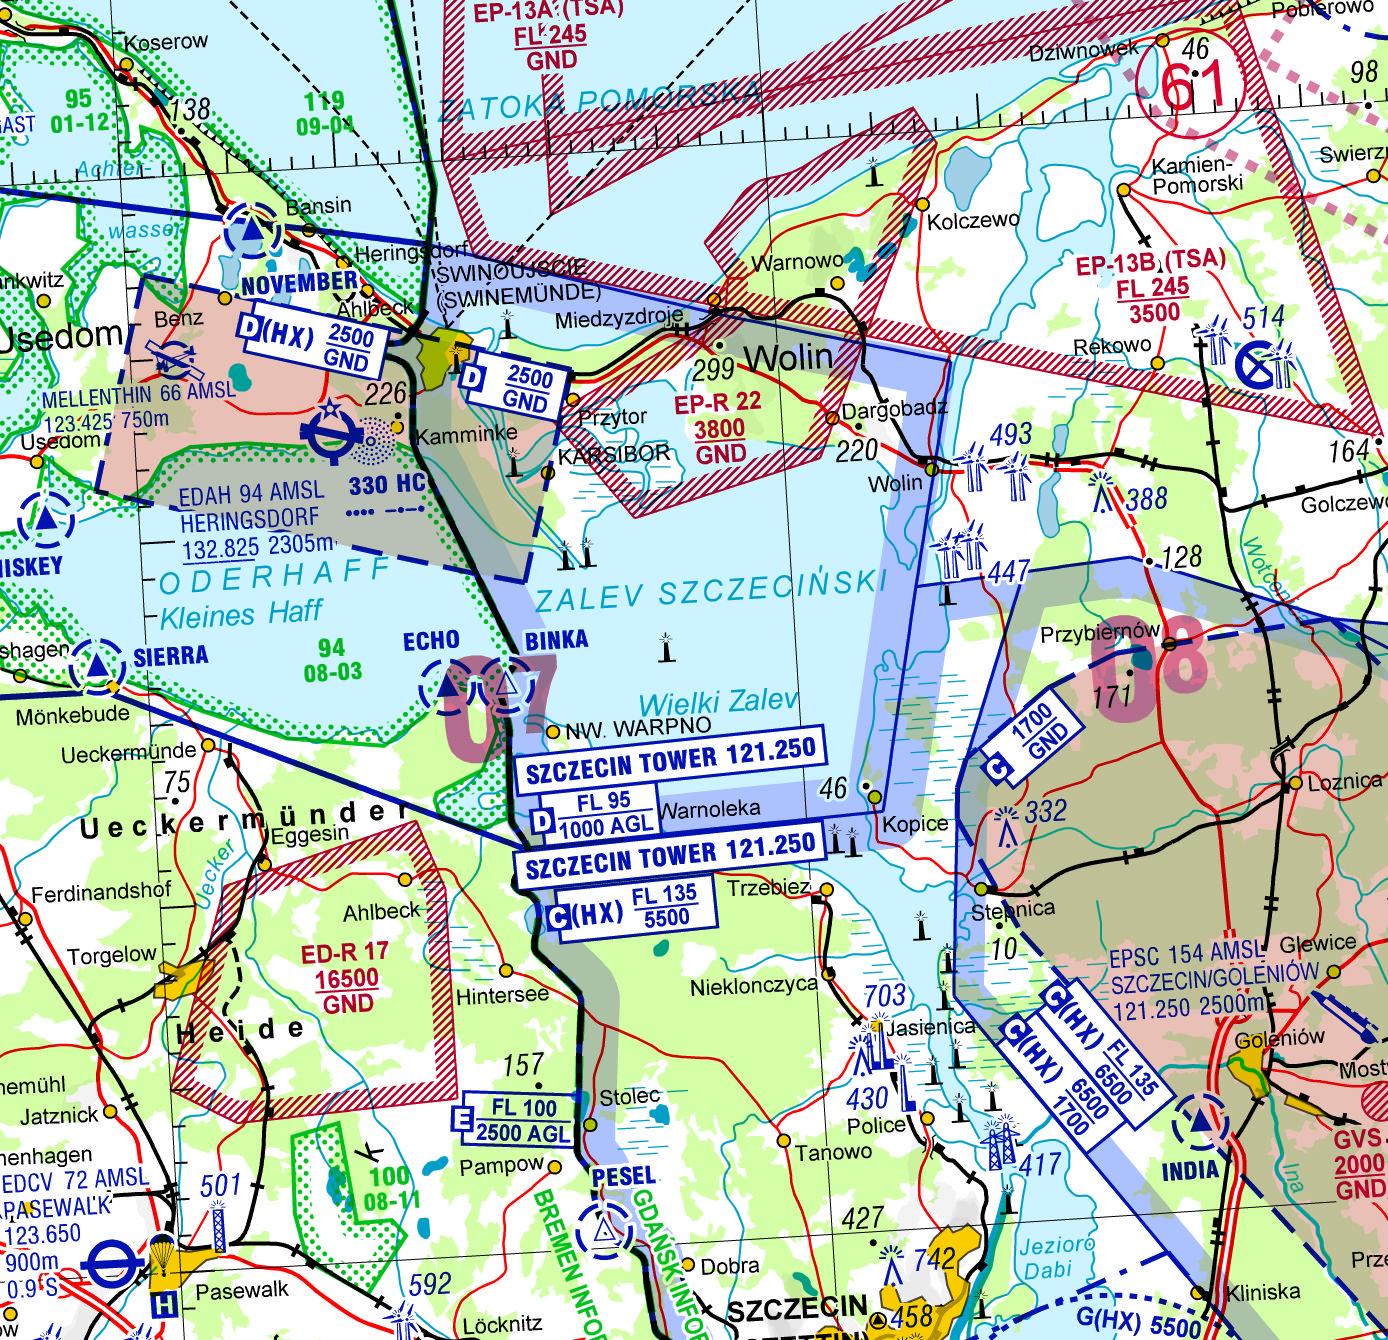 GEN 0 24 Flughafen Heringsdorf EDAH Rufzeichen/Frequenz für Luftraum D (nicht CTR) auf polnischem Gebiet geändert in SZCZECIN TOWER